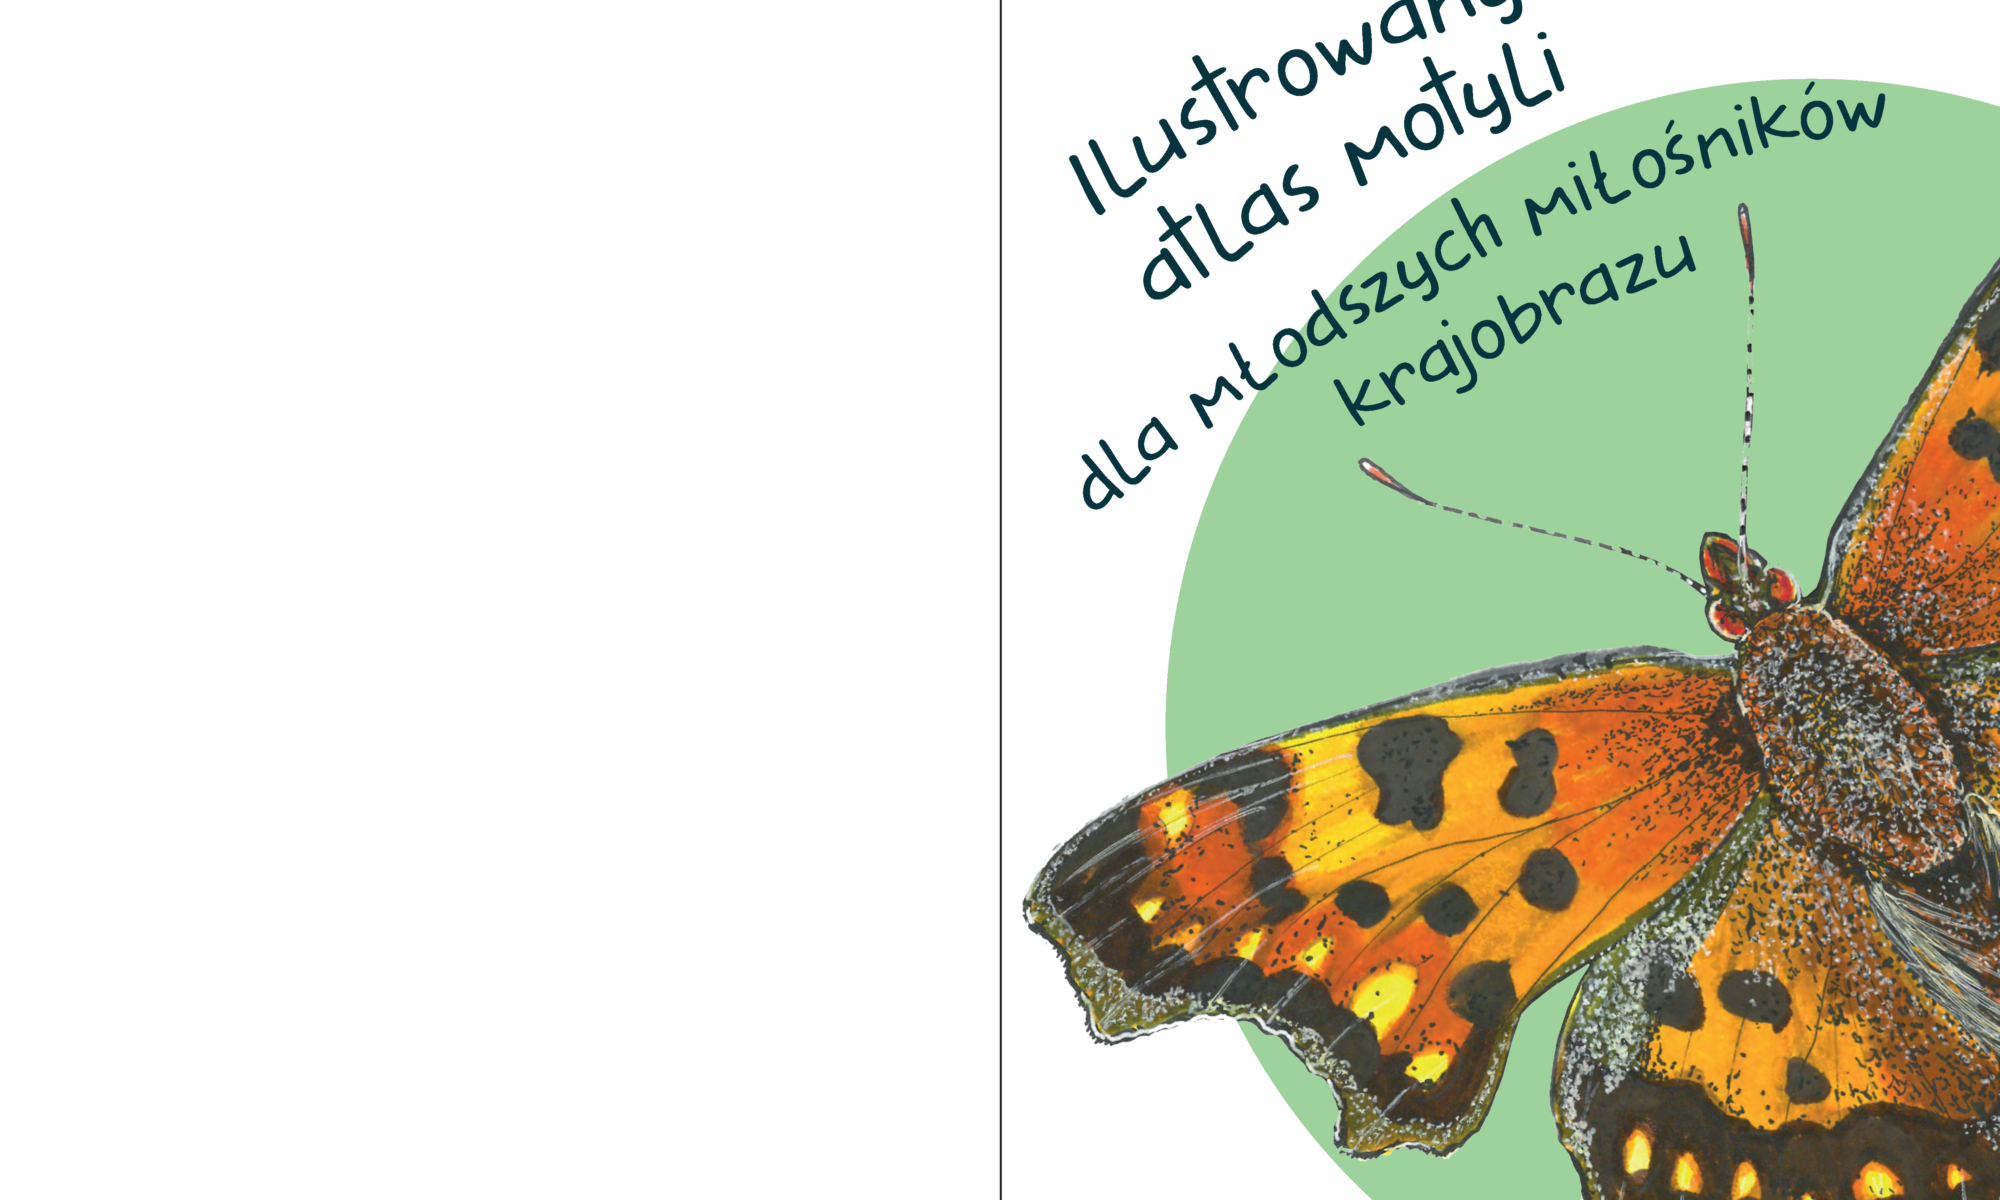 Okładka publikacji. Widać na niej motyla na zielonym kole oraz tytuł który brzmi "Ilustrowany atlas motyli dla młodszych miłośników krajobrazu"